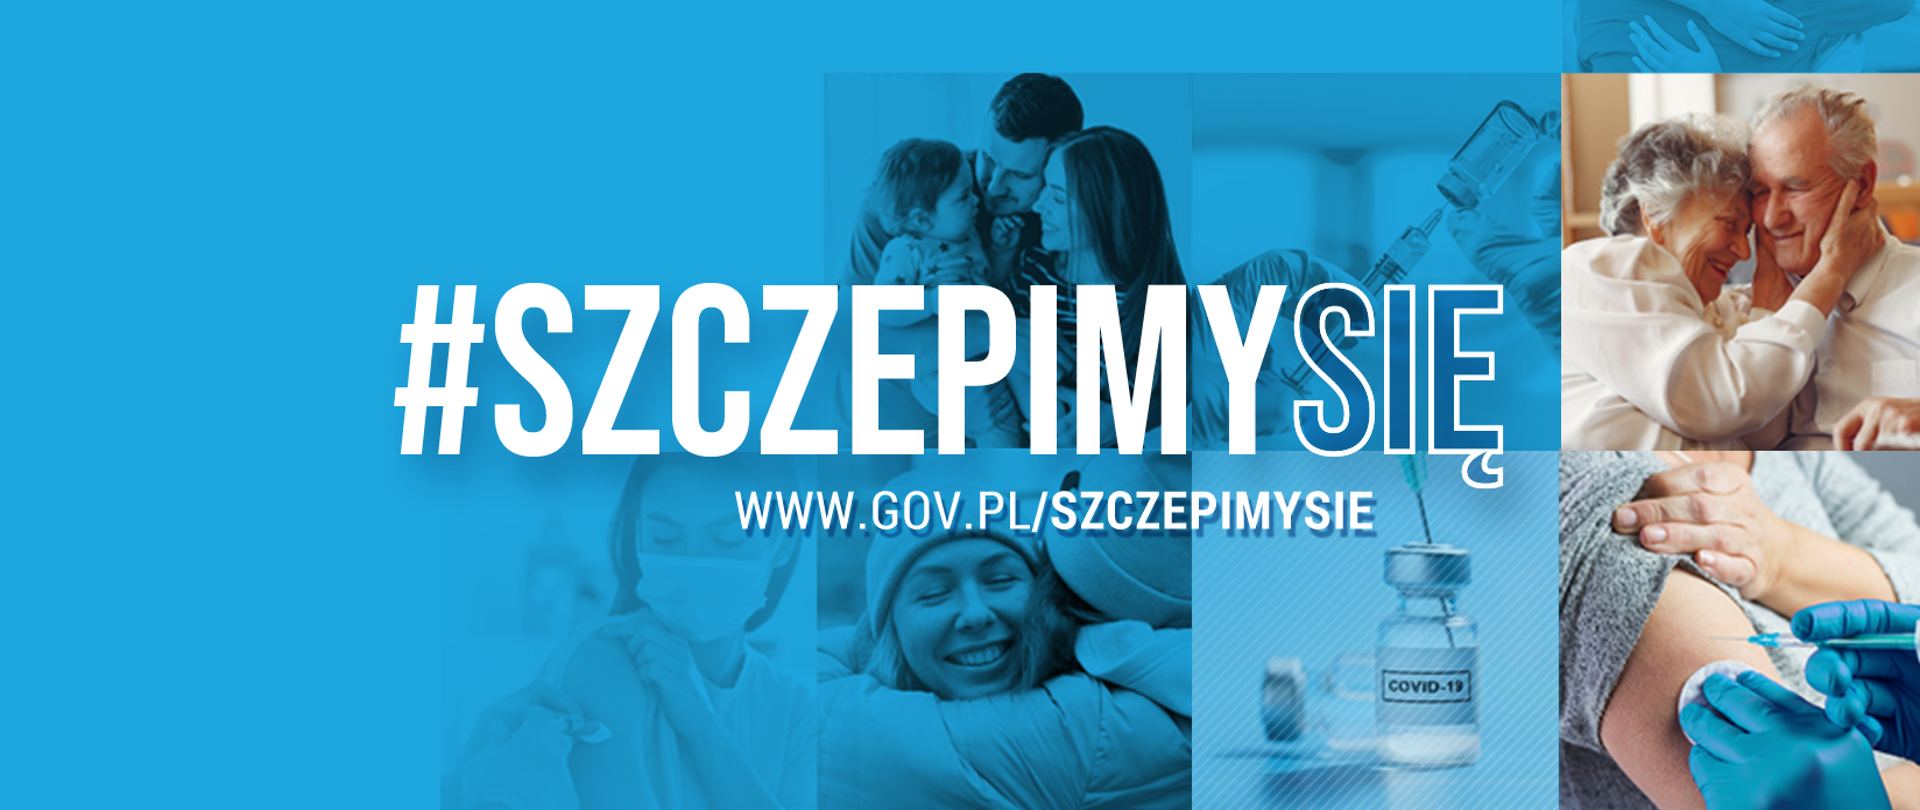 Niebieska grafika z napisem #SZCZEPIMYSIĘ i adresem strony www.gov.pl/szczepimysie. W tle zdjęcia przestawiające fiolkę szczepionki na COVID-19 oraz osoby w różnym wieku w relacjach rodzinnych.